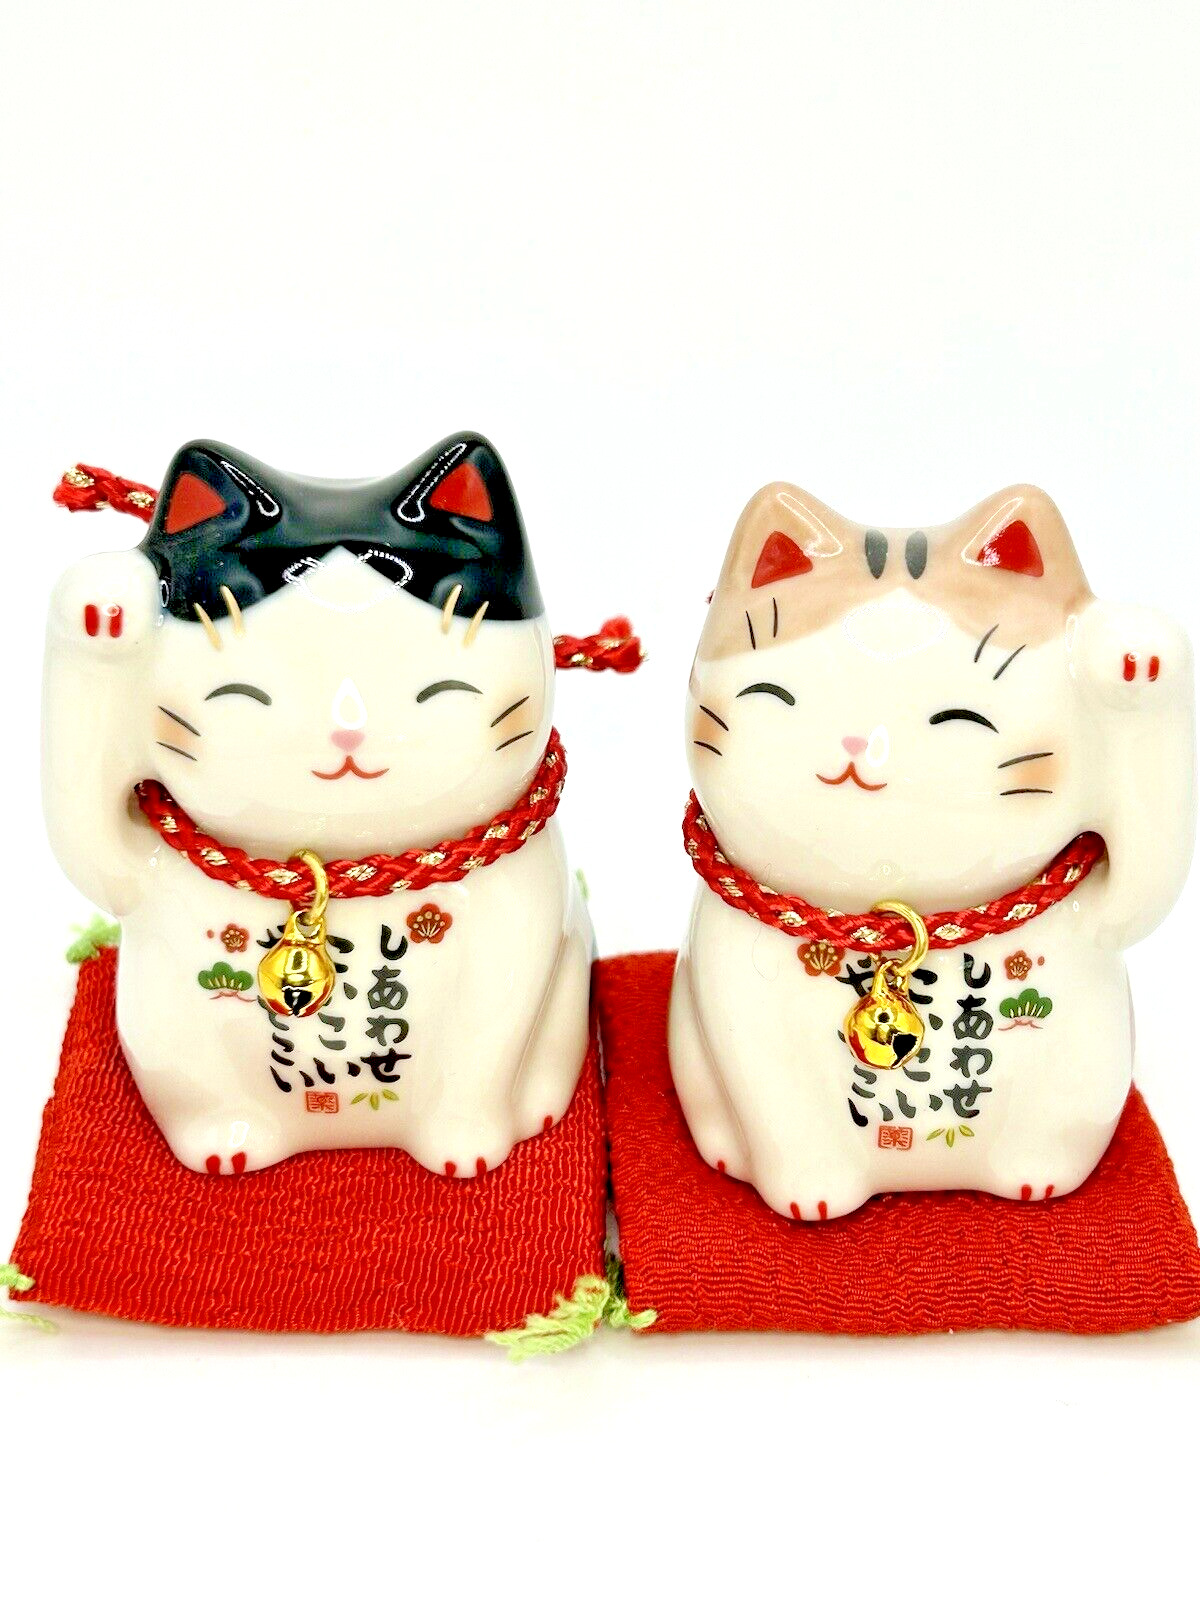 Maneki neko Yakushigama Japanese lucky cat figure [set of 2] beckoning cats